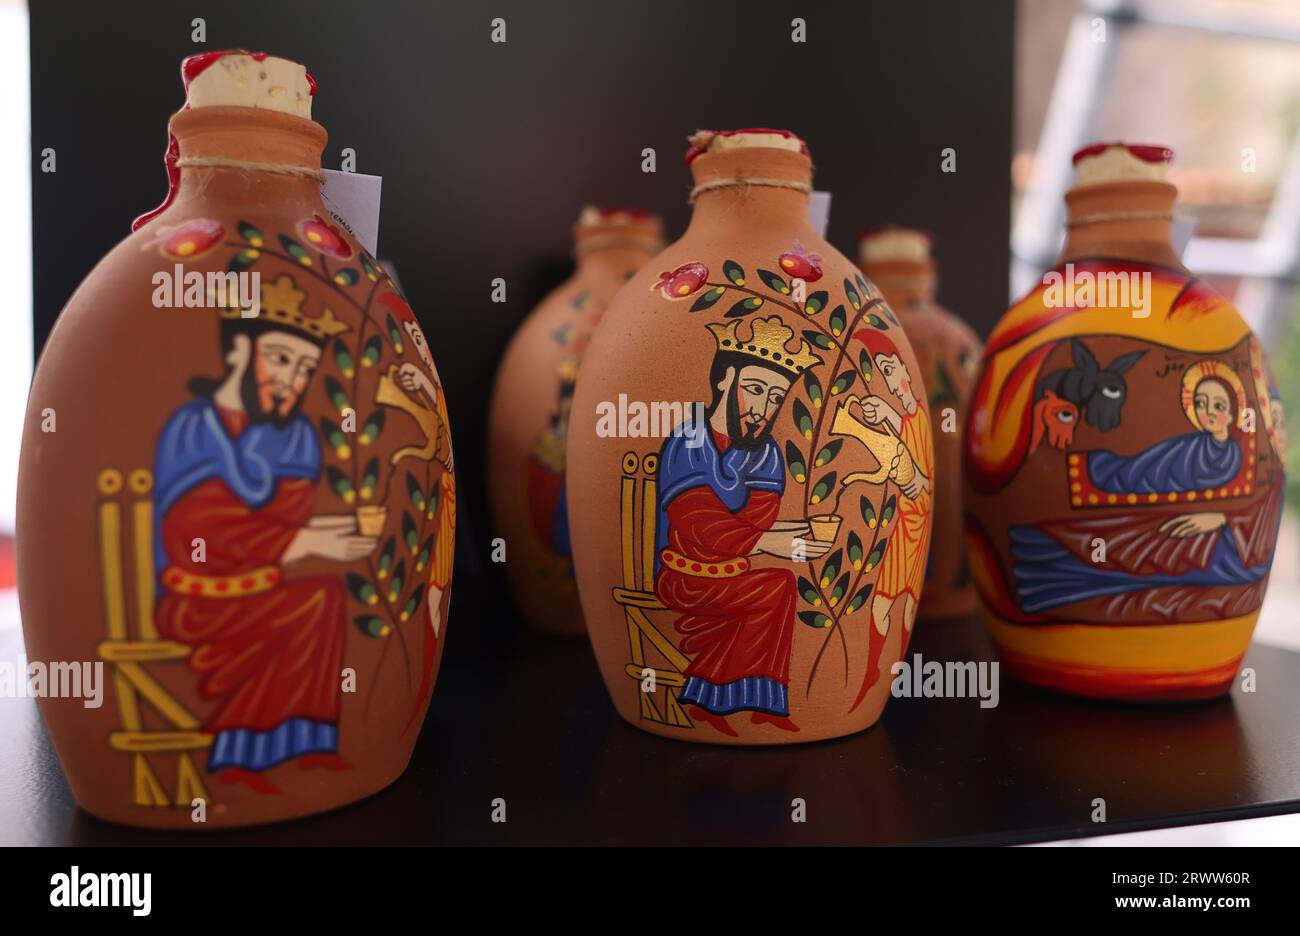 Eine Gruppe von drei handbemalten Glasflaschen in verschiedenen Farben, Größen und Designs werden nebeneinander auf einer glatten Holzoberfläche angezeigt Stockfoto